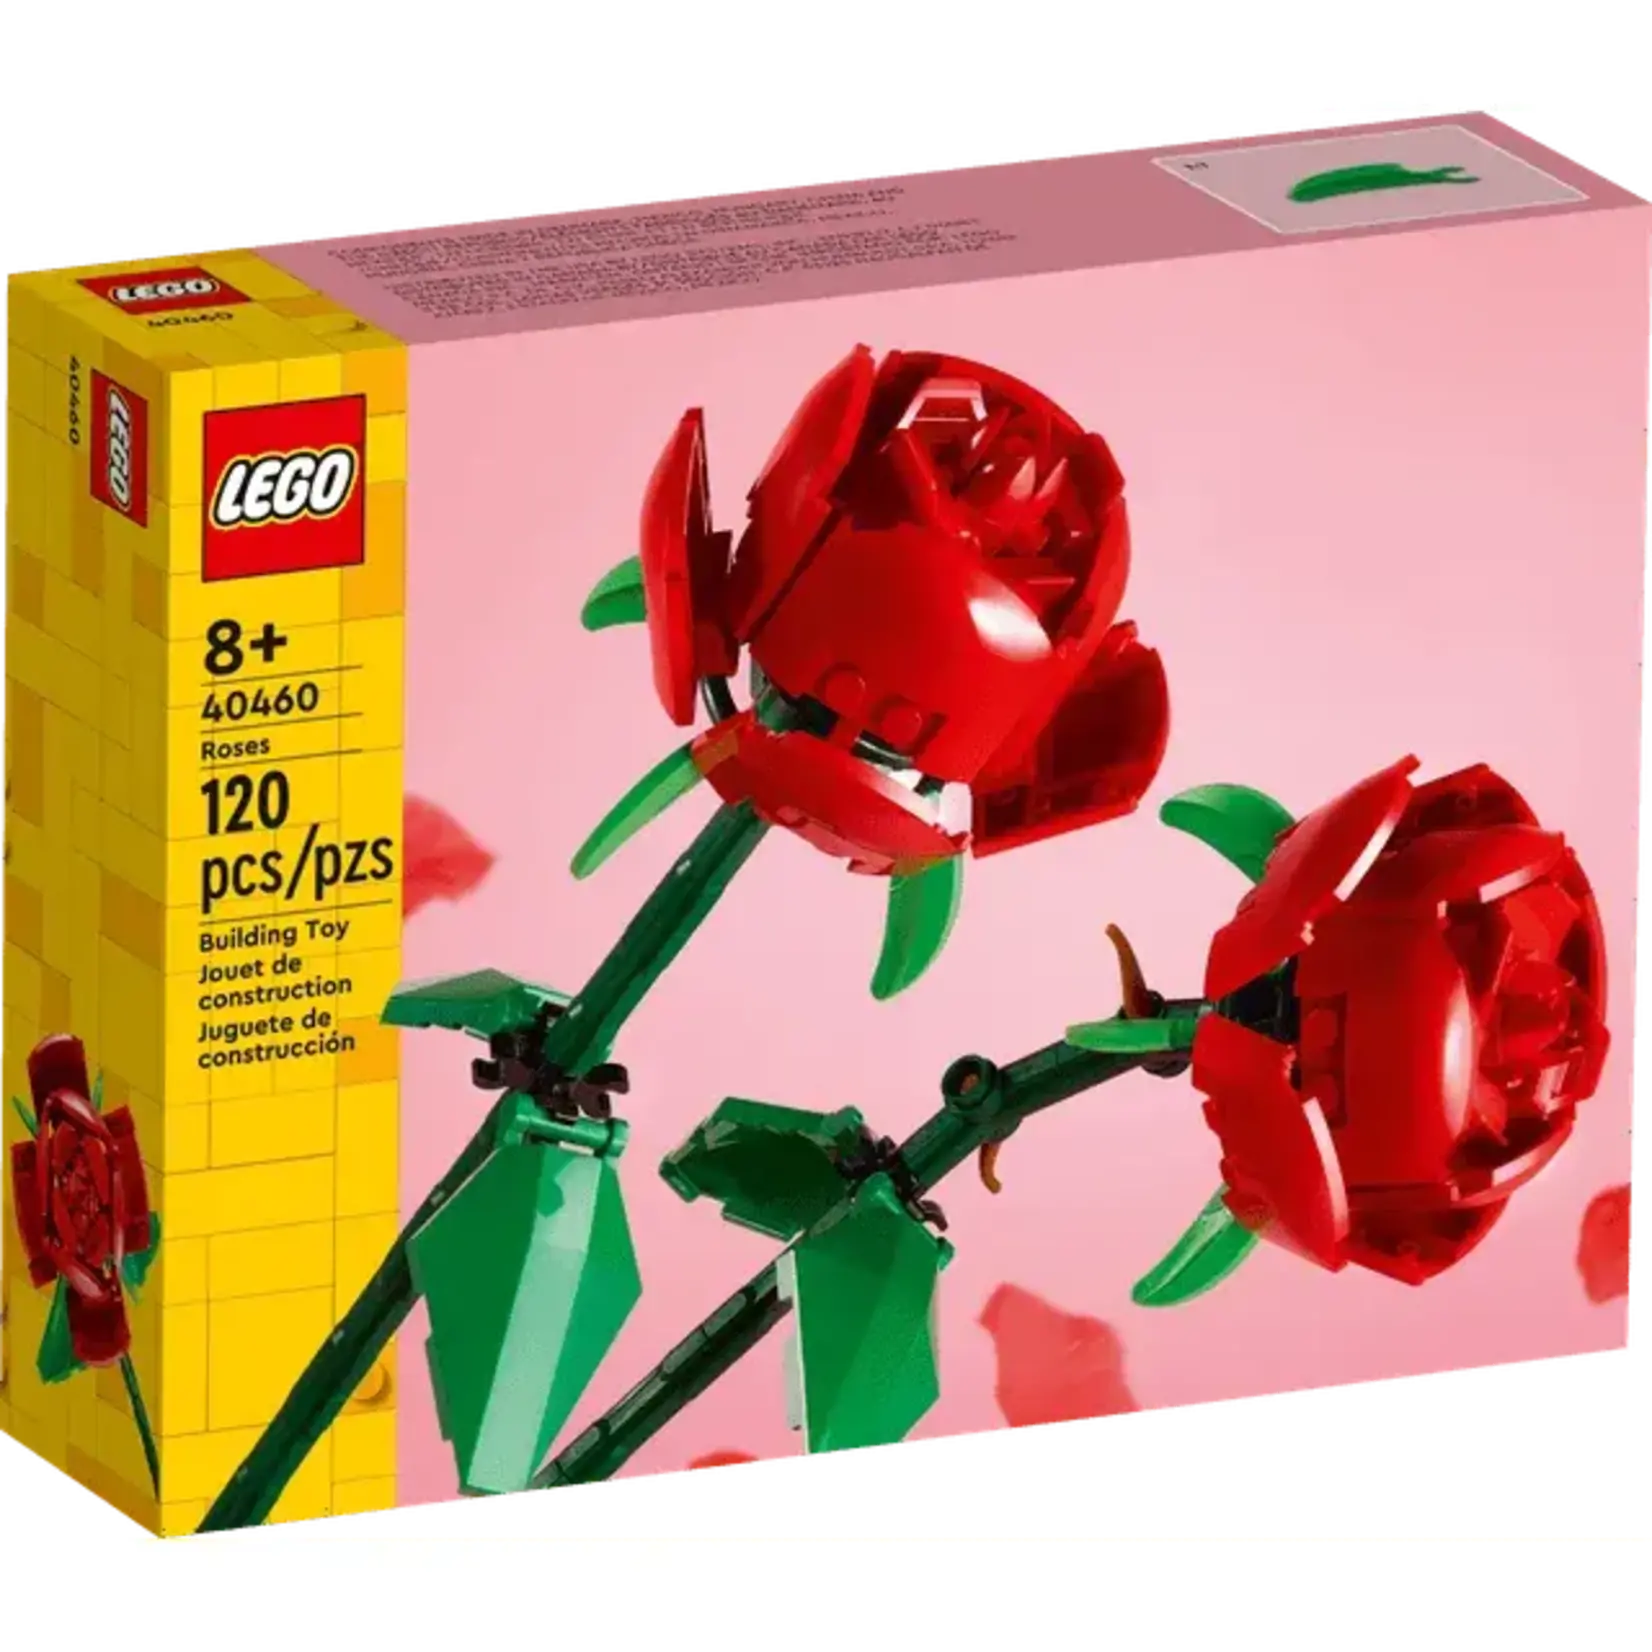 LEGO LEGO Roses 40460